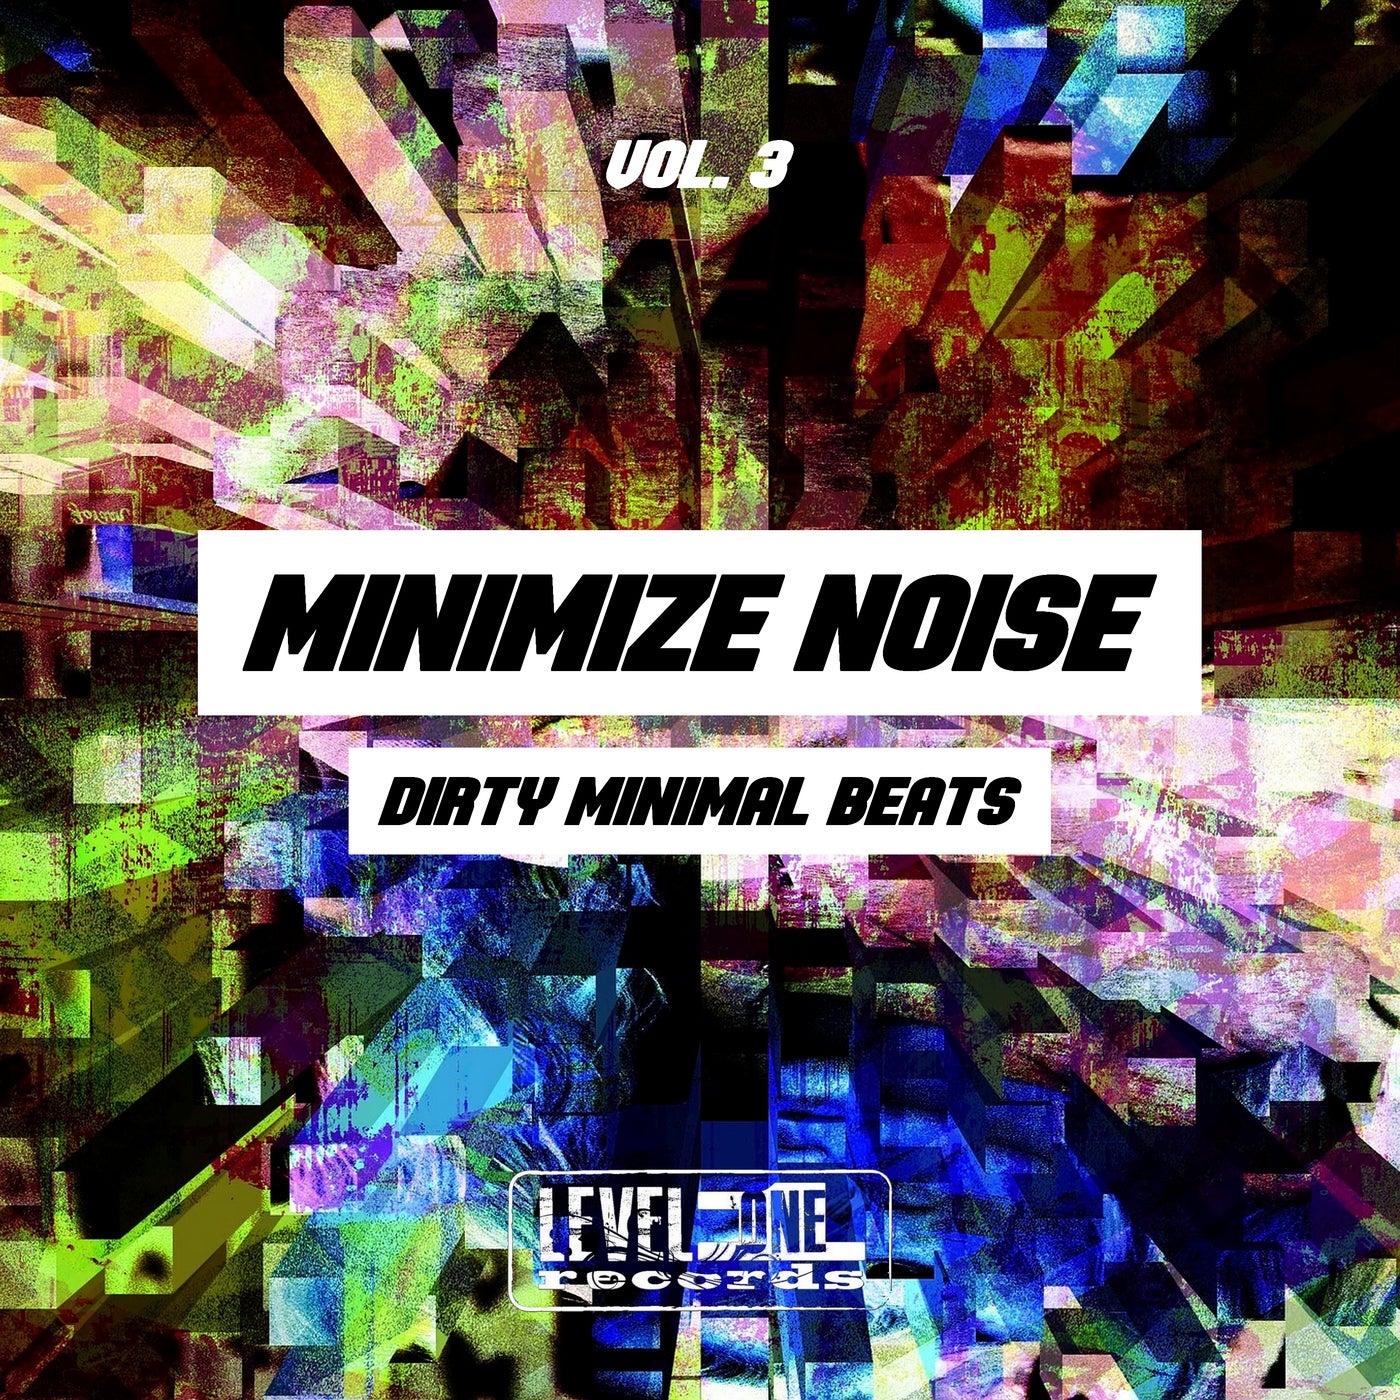 Minimize Noise, Vol. 3 (Dirty Minimal Beats)